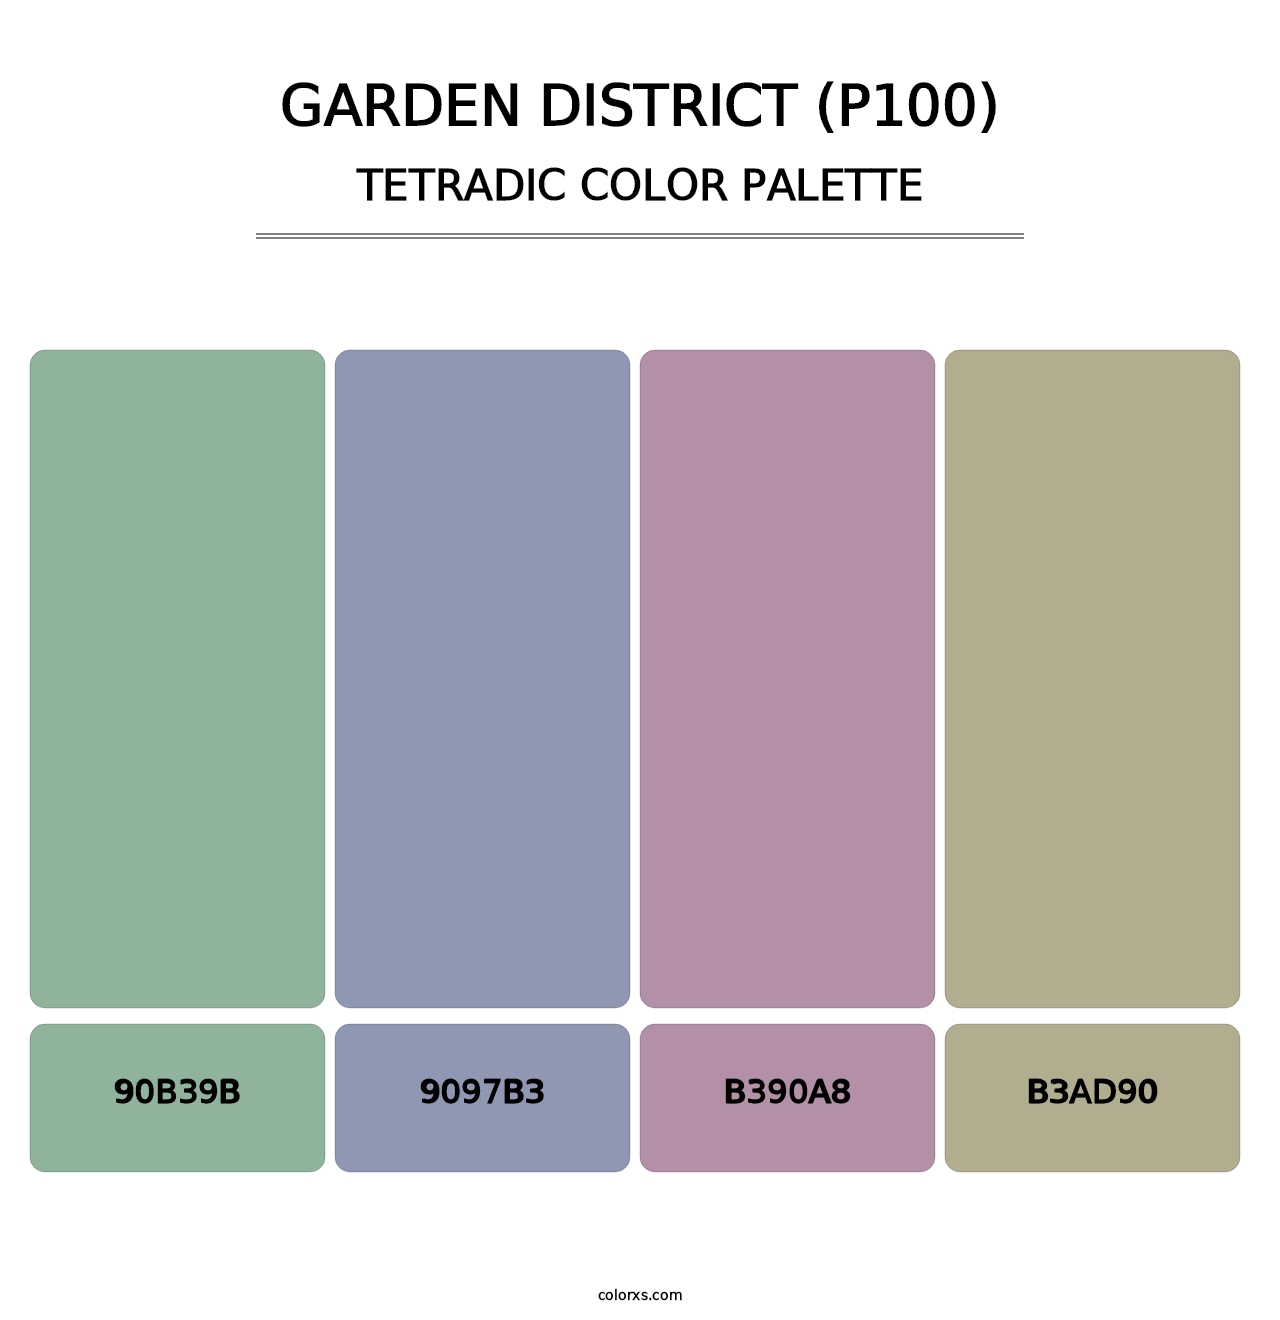 Garden District (P100) - Tetradic Color Palette